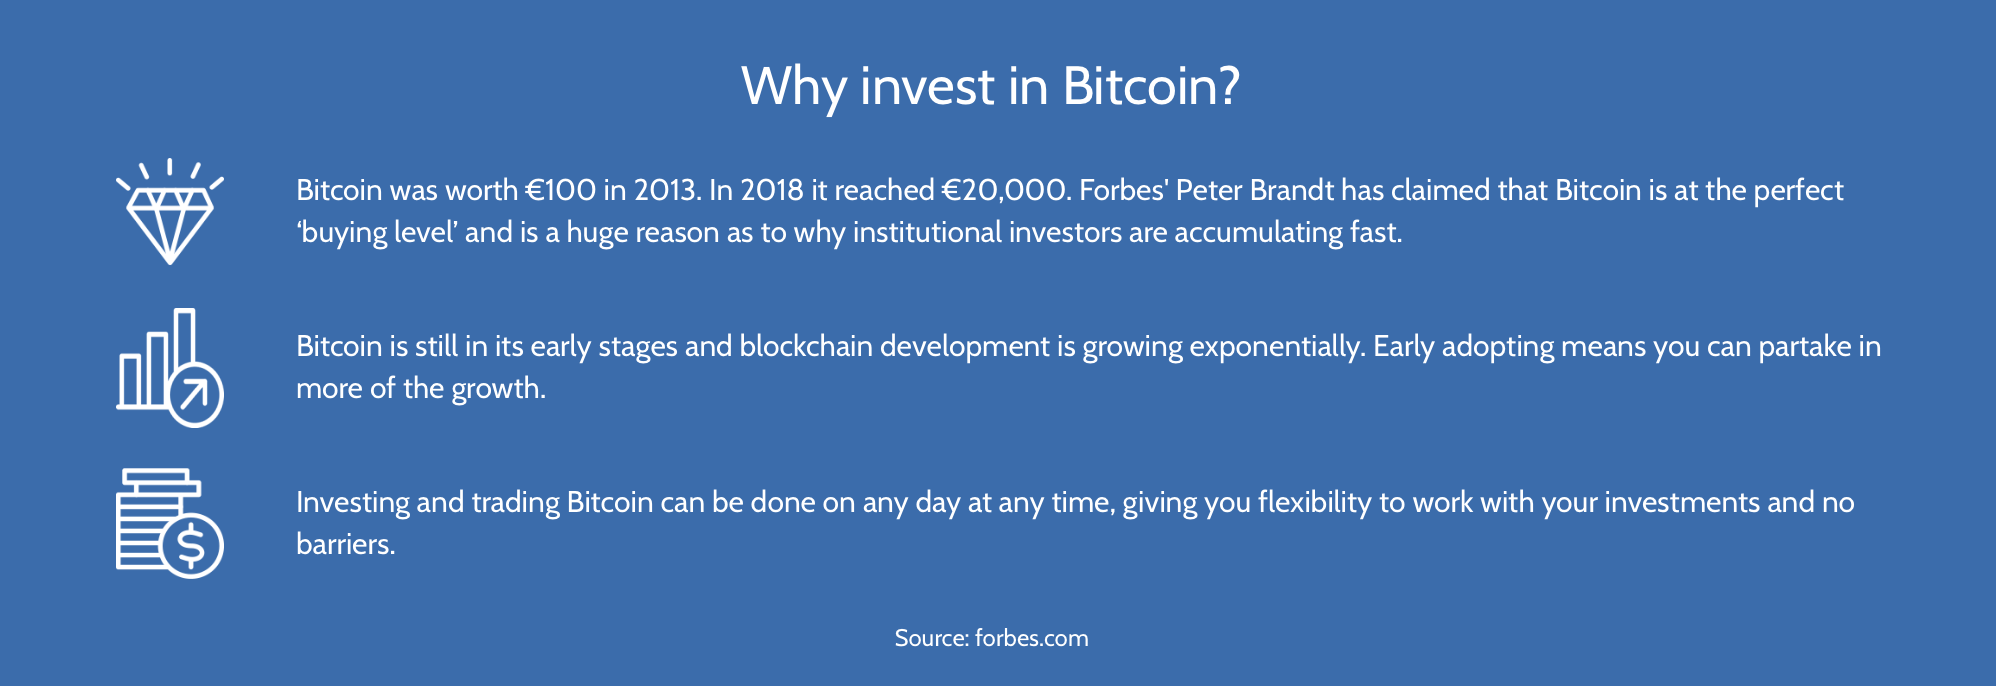 Razões para investir em Bitcoin